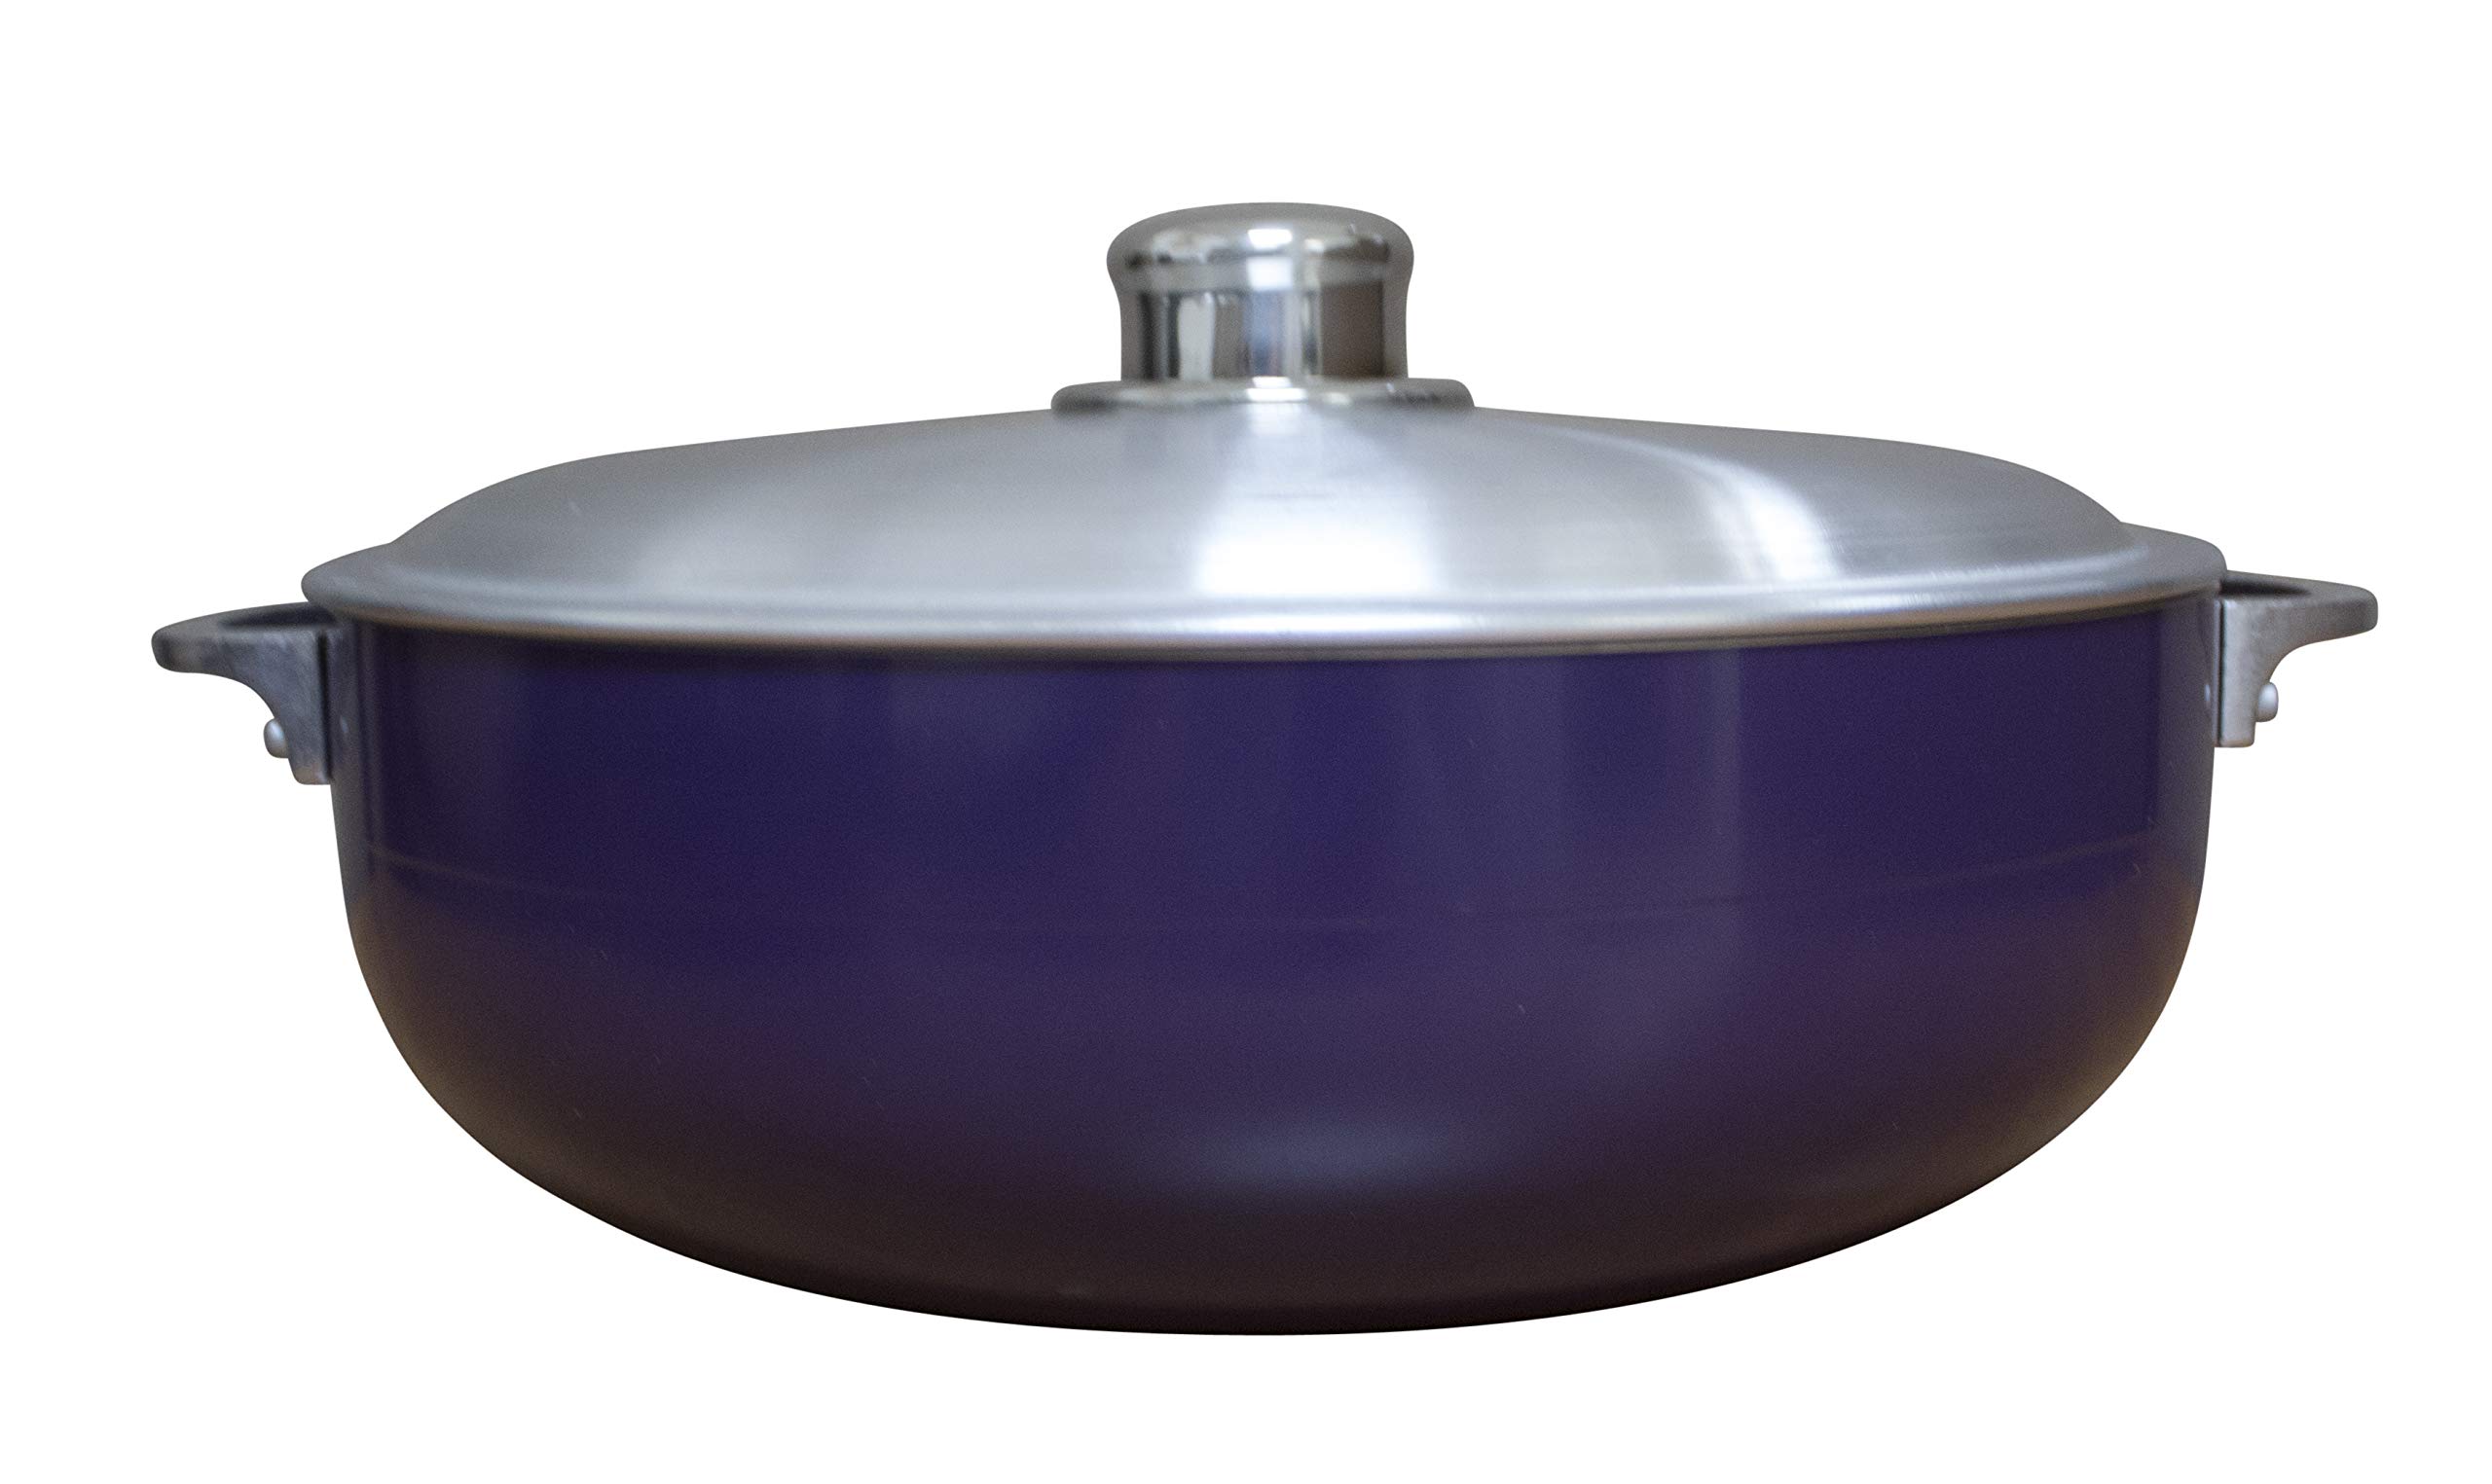 IMUSA USA 2 Piece Purple Caldero (Dutch Oven Set with Aluminum Lid (4.4Qt, 6.9Qt) Oven Safe